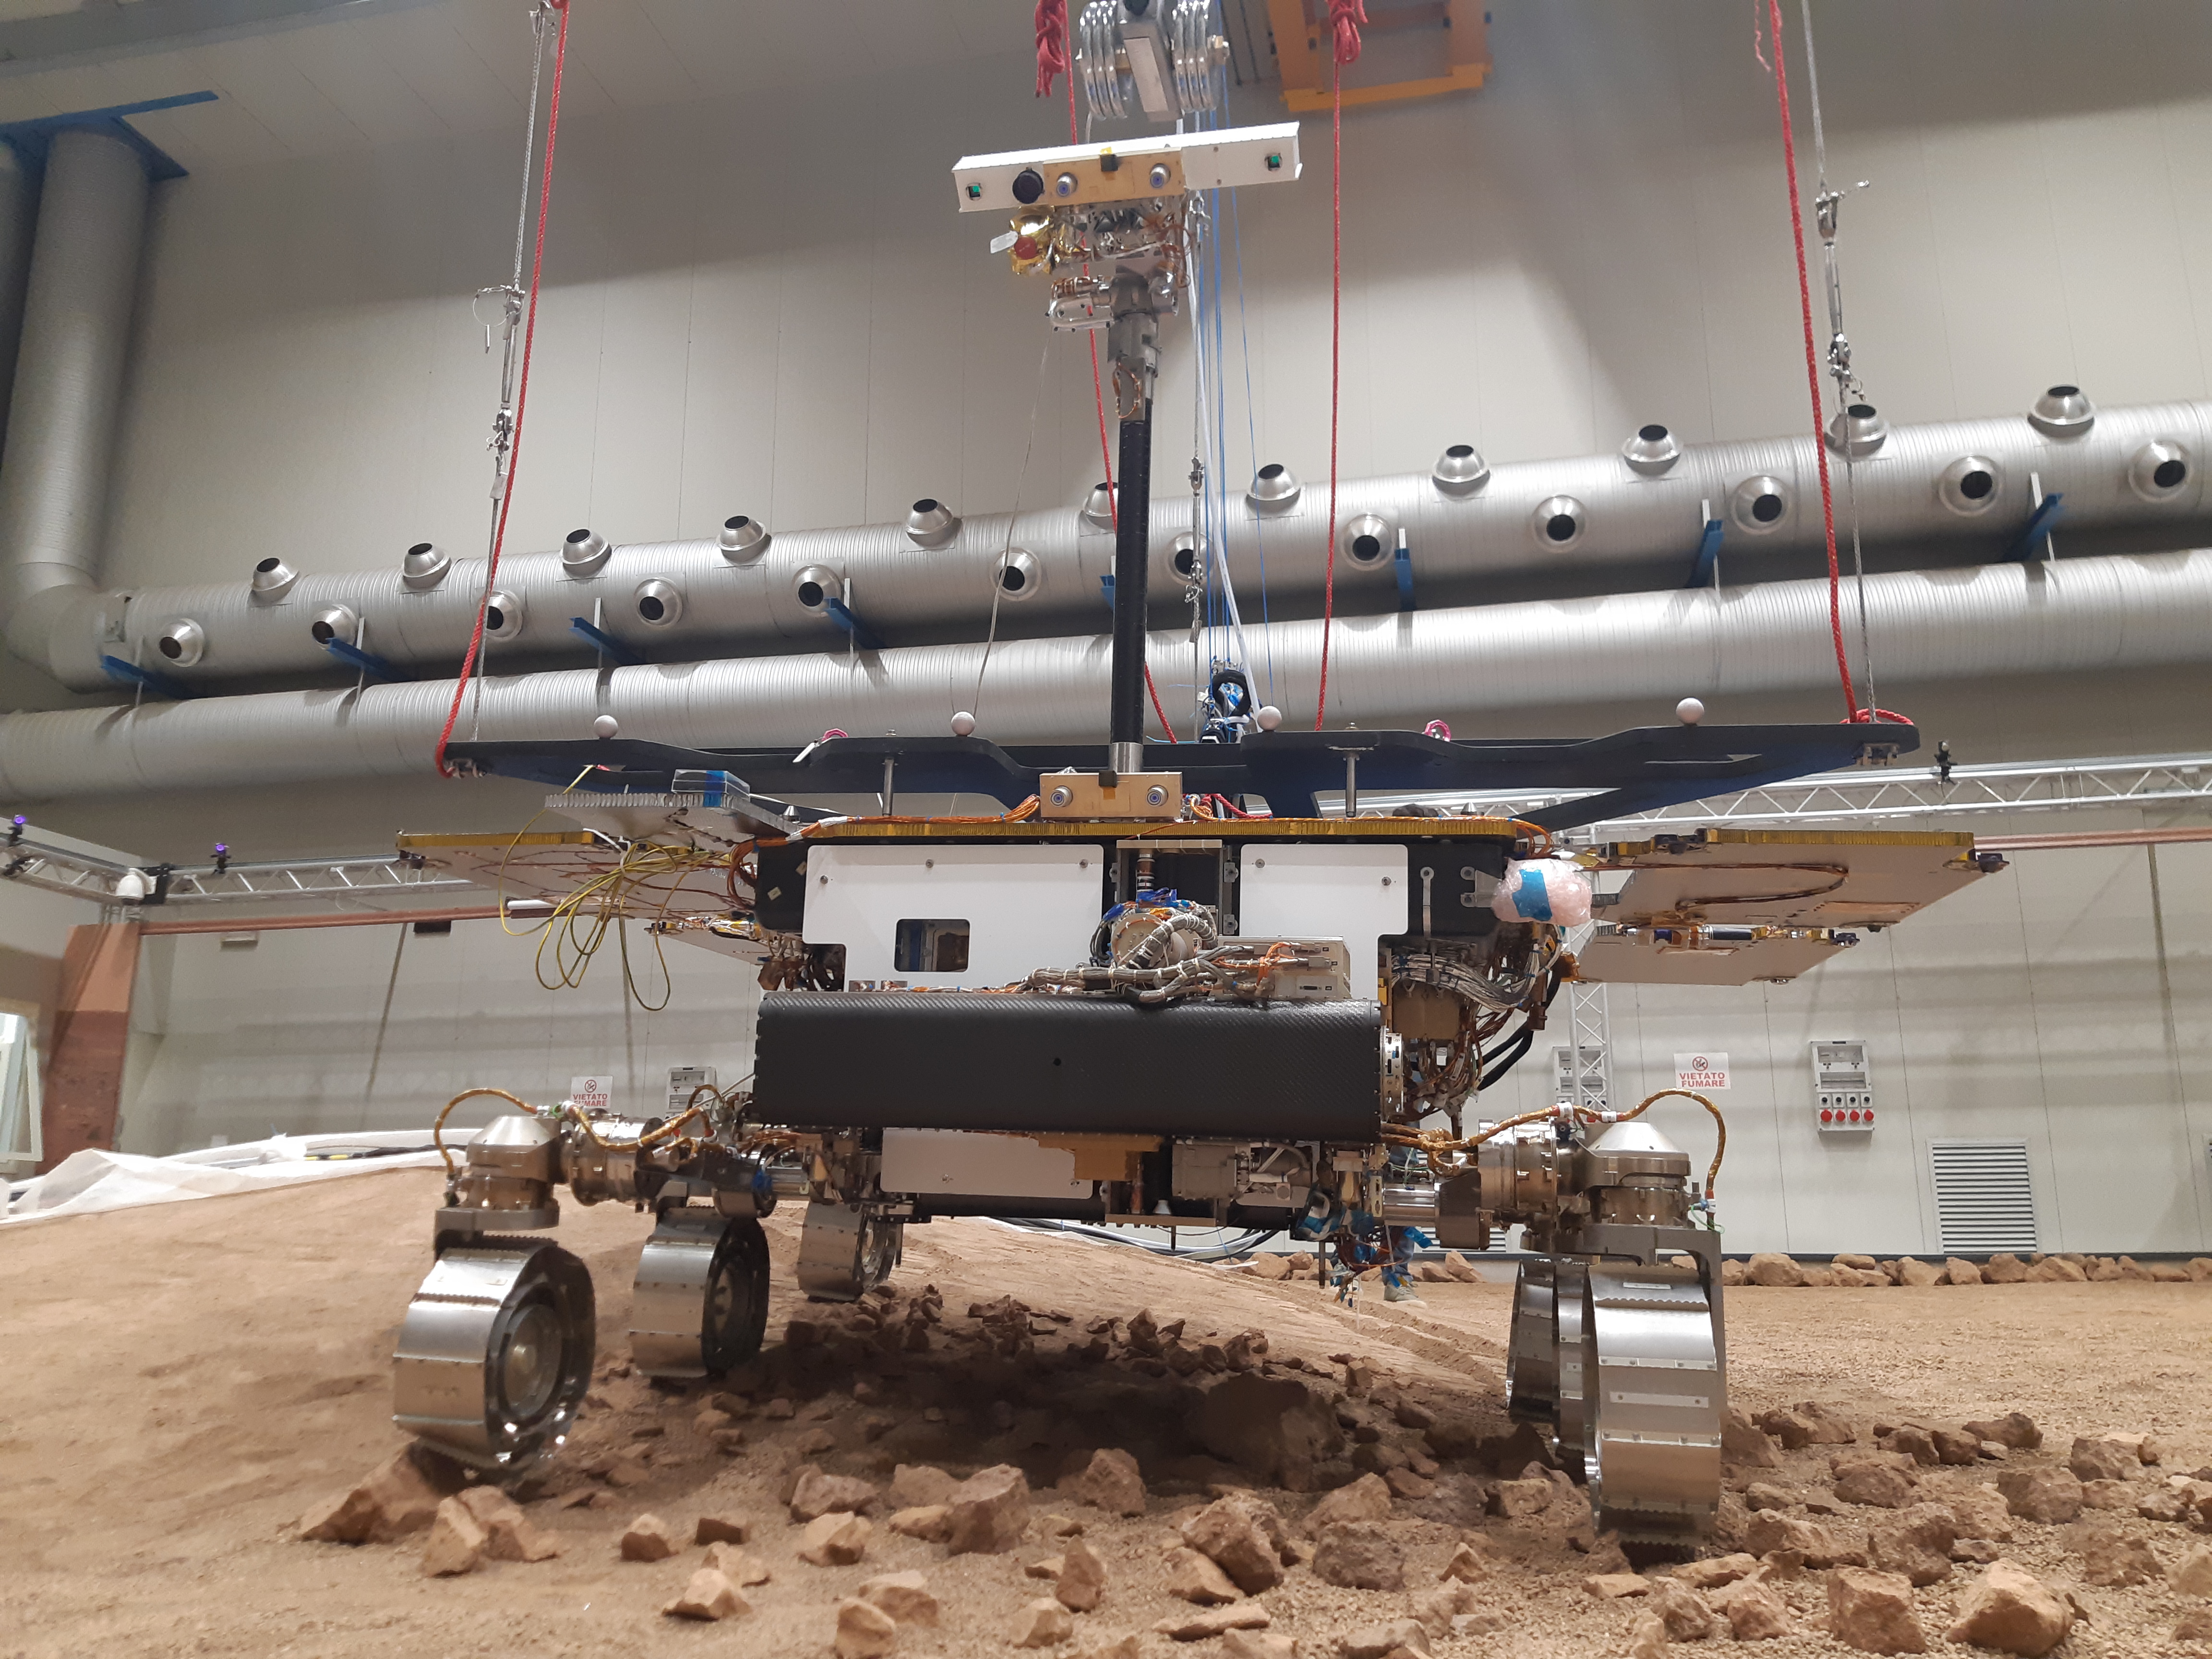 Réplica del rover ExoMars de la ESA y Roscosmos, conocido como Amalia, conduciendo a través de un terreno accidentado. Su lanzamiento, previsto en 2022 para buscar vida en Marte, es ahora improbable. / ESA